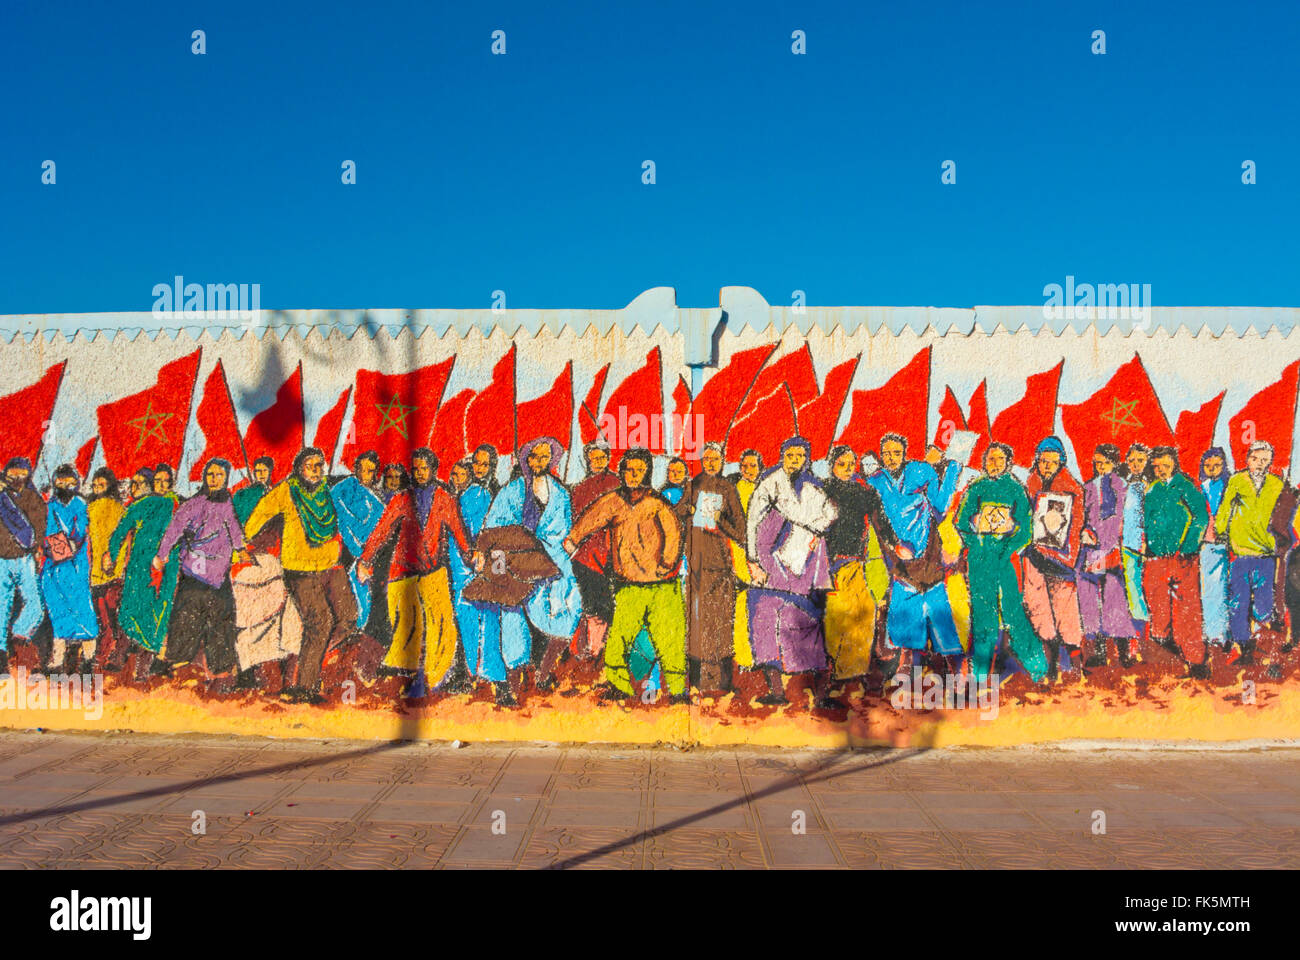 Marche verte murale, Tan Tan, le sud du Maroc, l'Afrique du Nord Banque D'Images